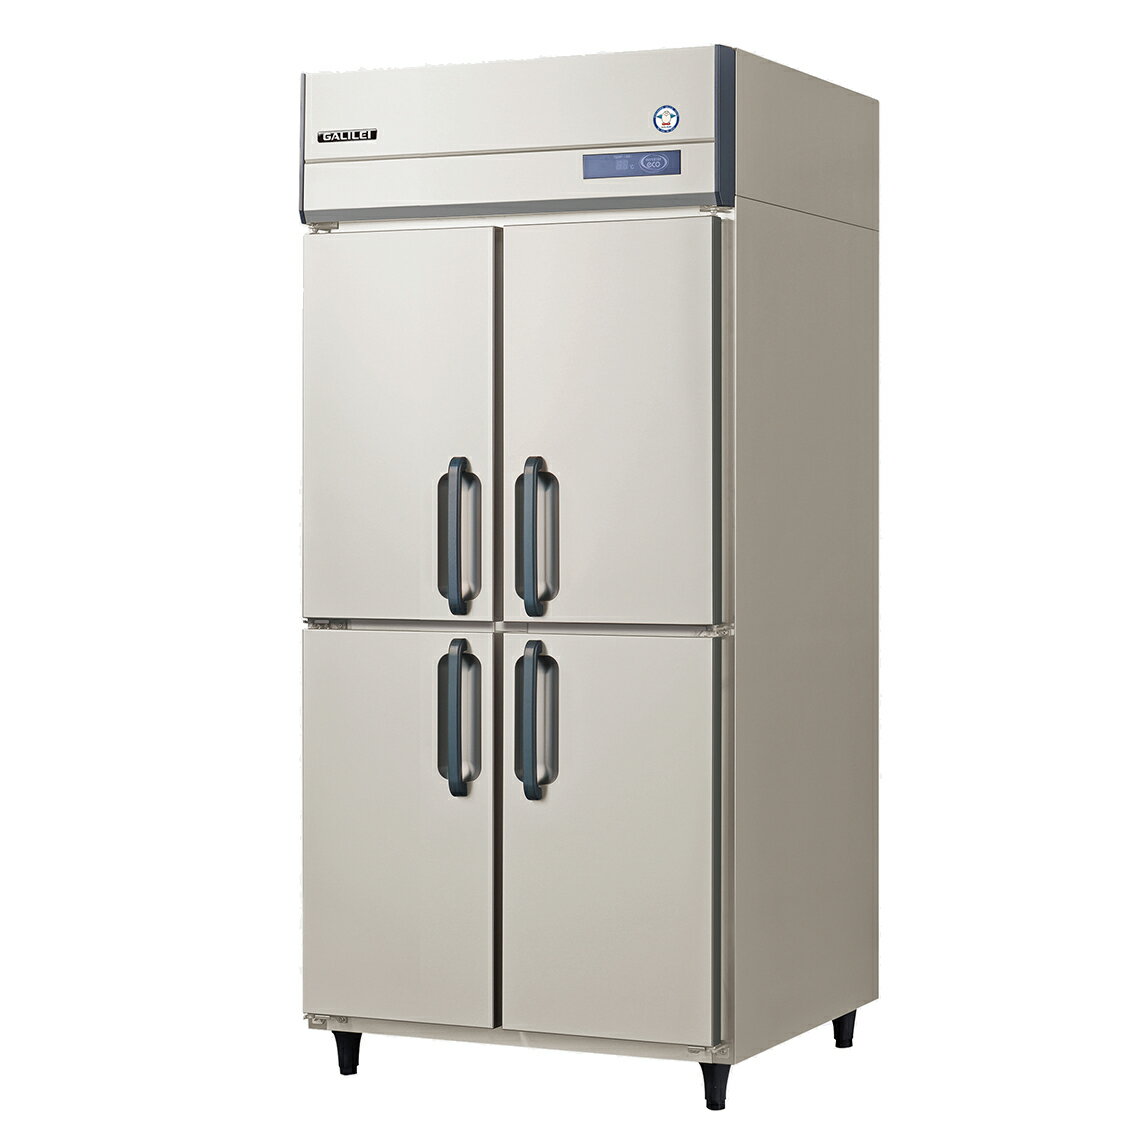 フクシマガリレイノンフロン縦型インバーター冷凍庫型式：GRD-094FX寸法：幅900mm 奥行800mm 高さ1950mm送料：無料 (メーカーより直送)保証：メーカー保証付